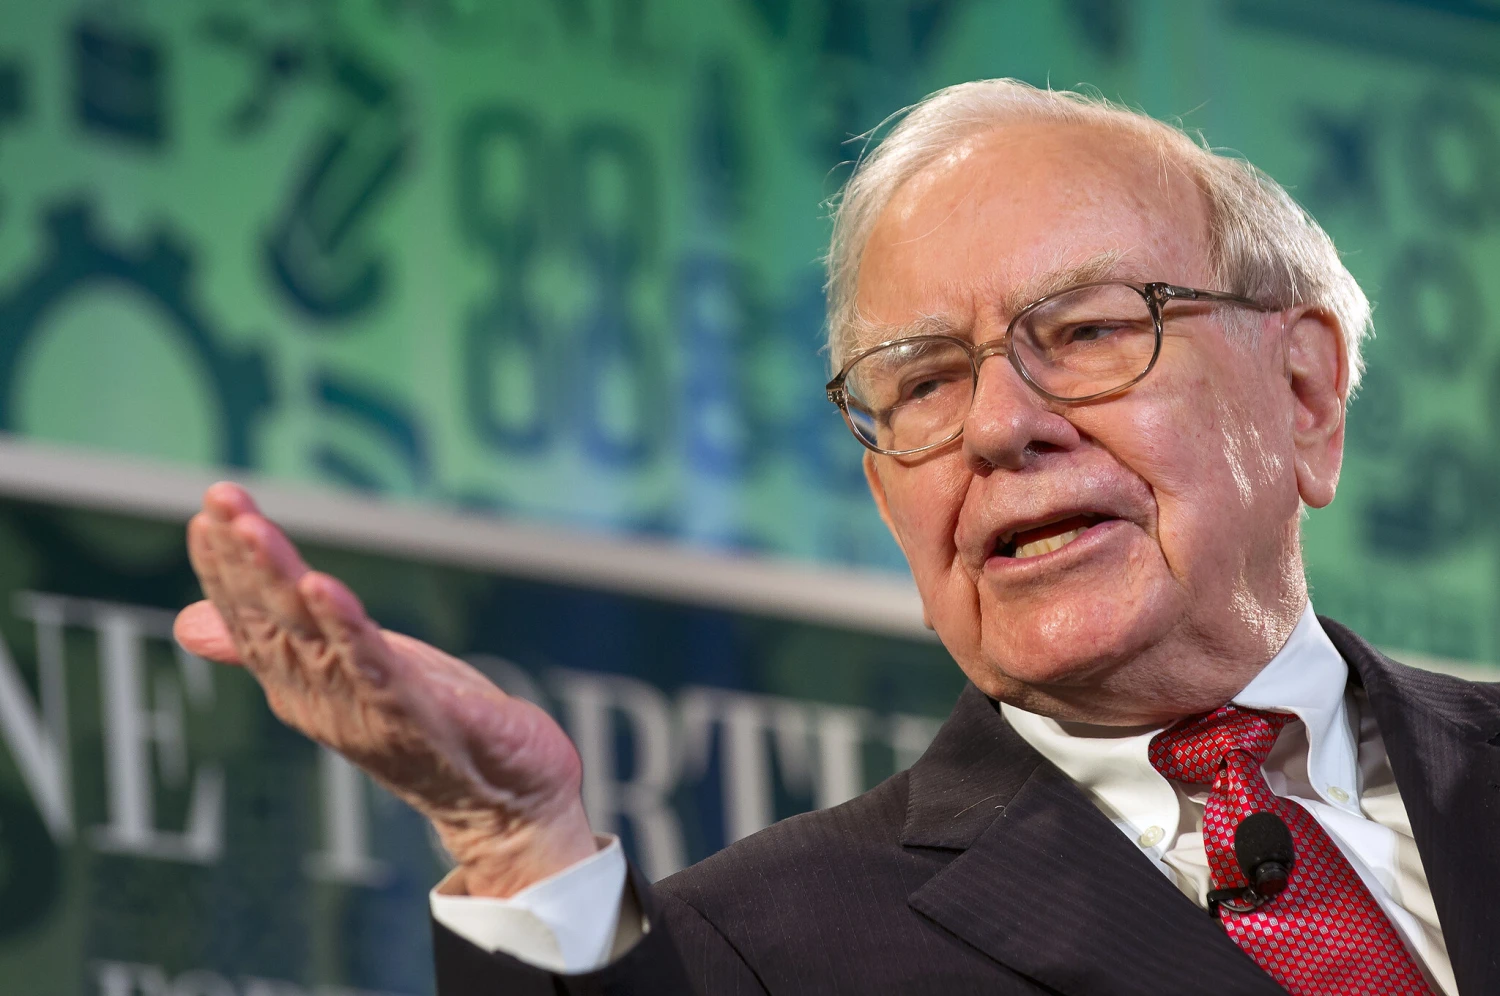 Buffettova Berkshire Hathaway hlásí rekordní čistý zisk. Překročil 96 miliard dolarů